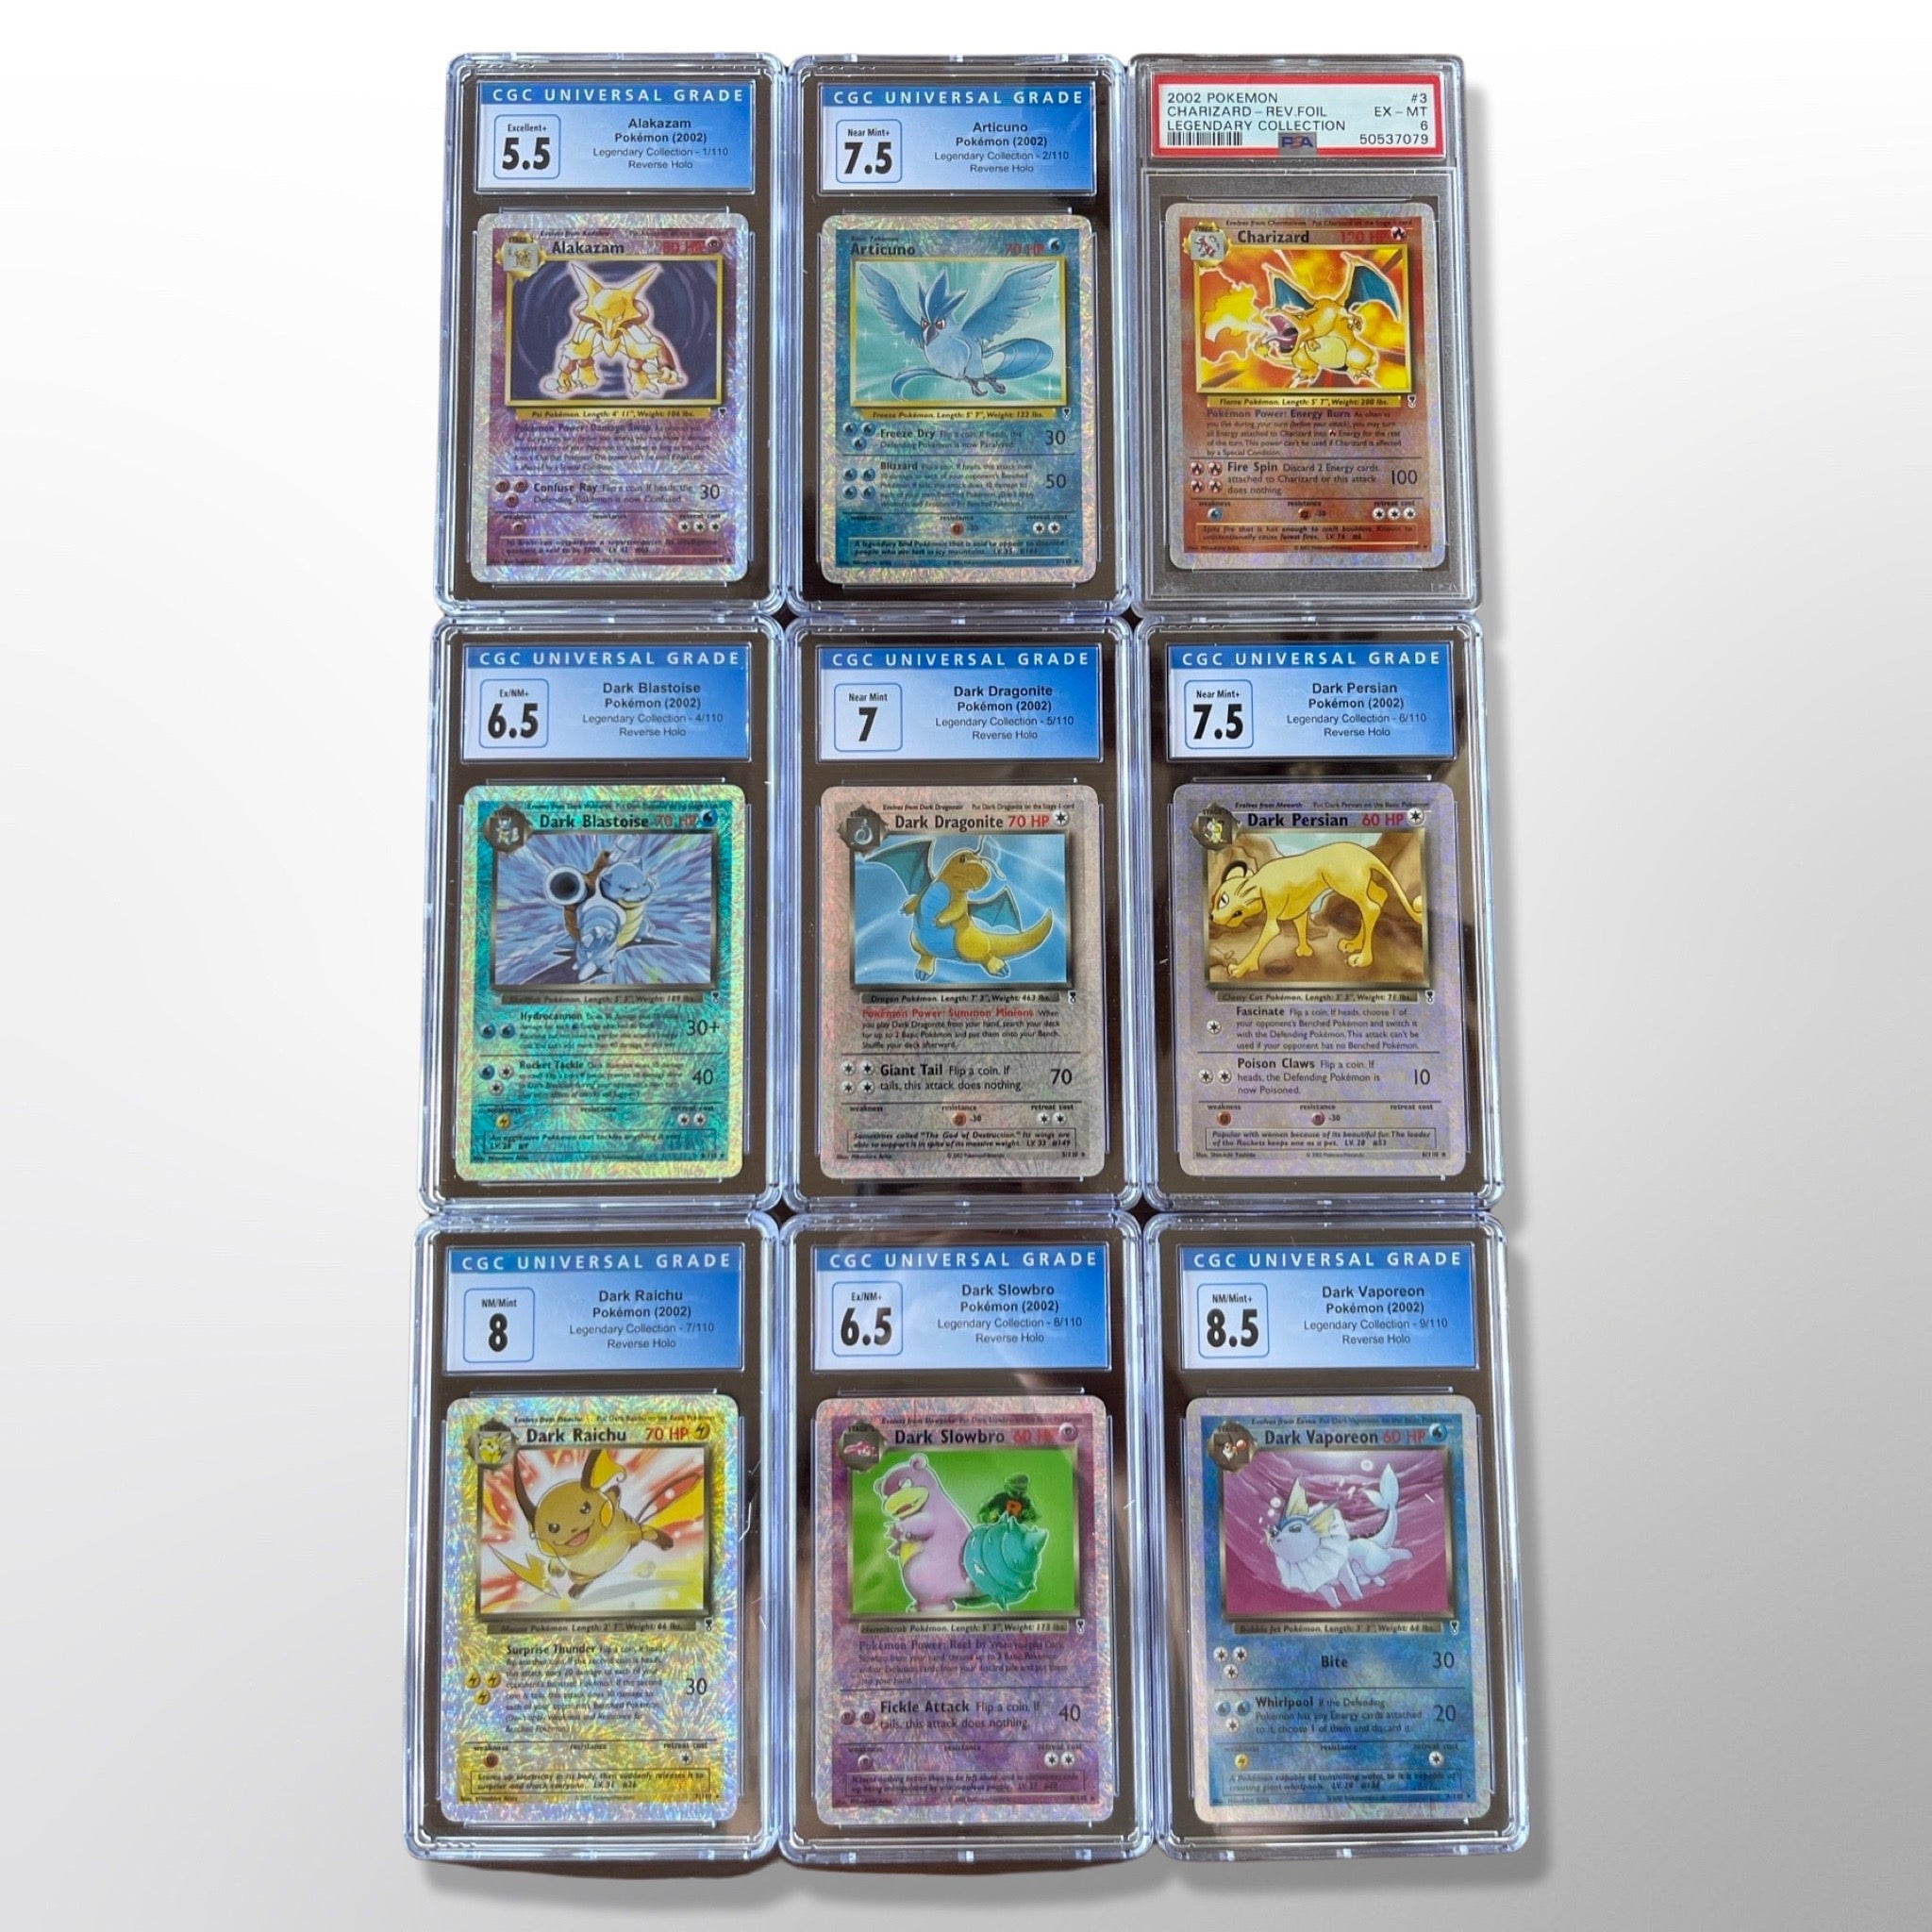 Gyarados, Gengar, Ninetales ex e mais! Pokémon Card 151 está quase completo